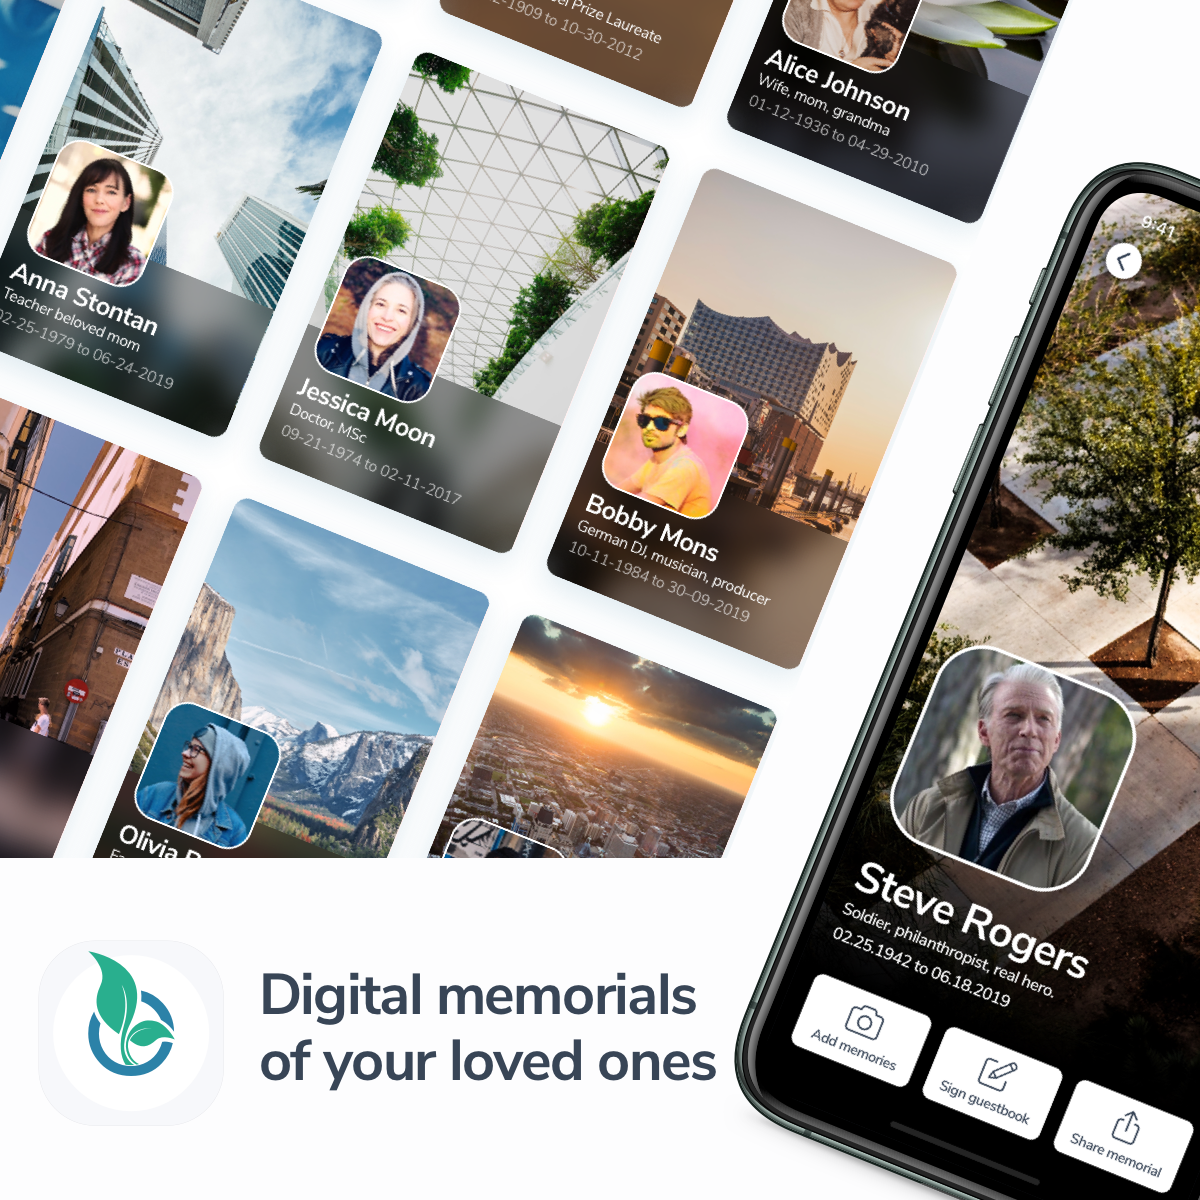 Digital memorials of your loved ones